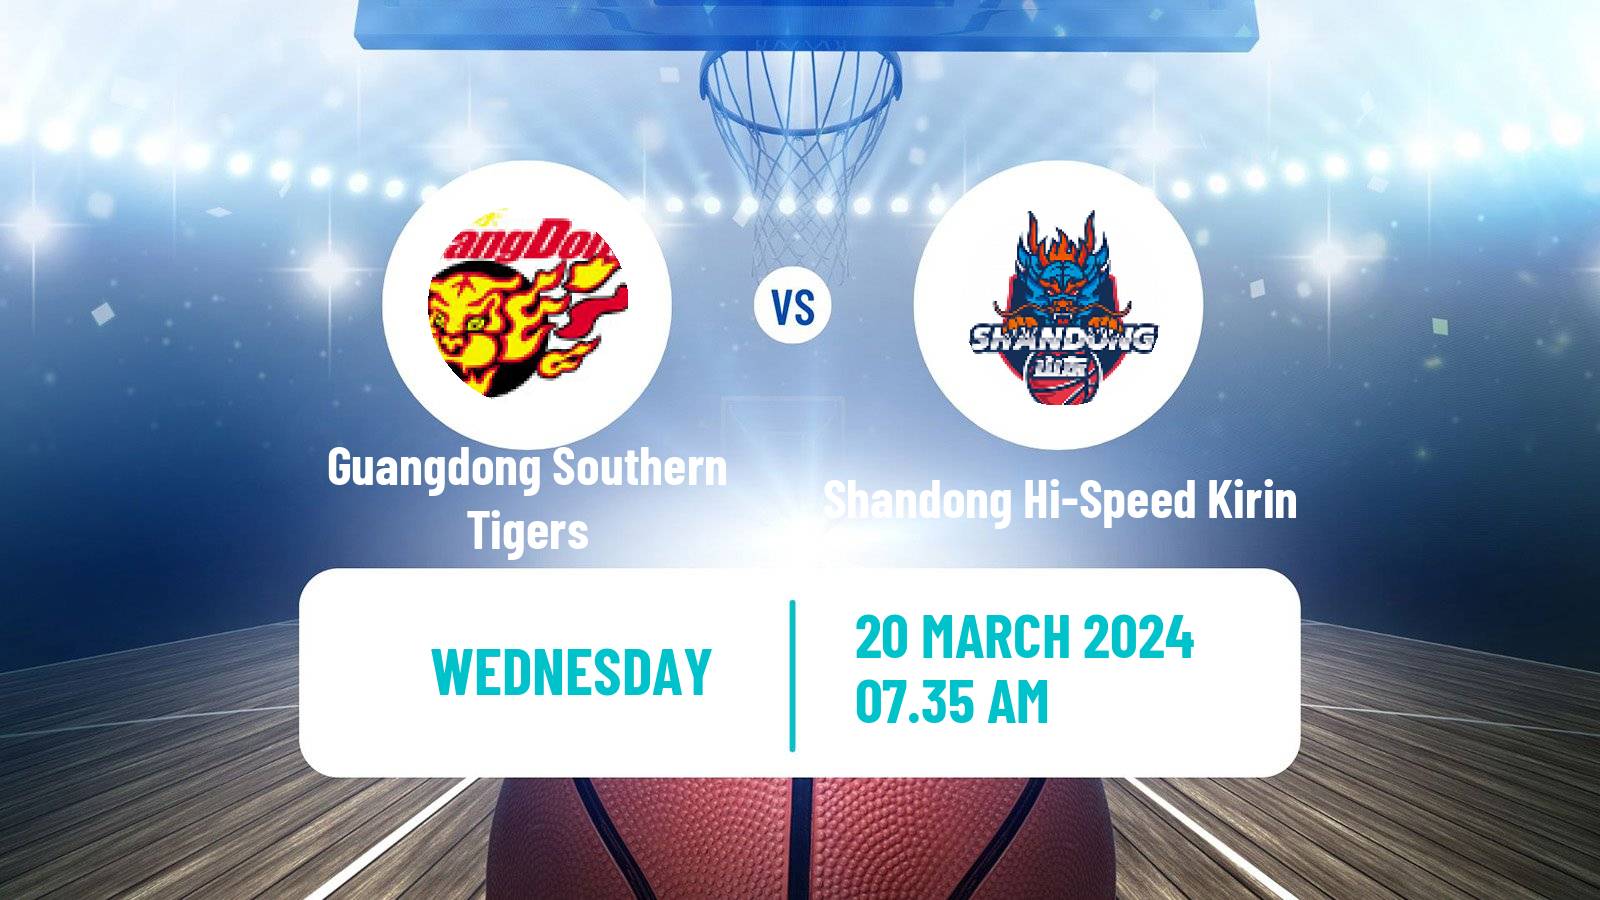 Basketball CBA Guangdong Southern Tigers - Shandong Hi-Speed Kirin